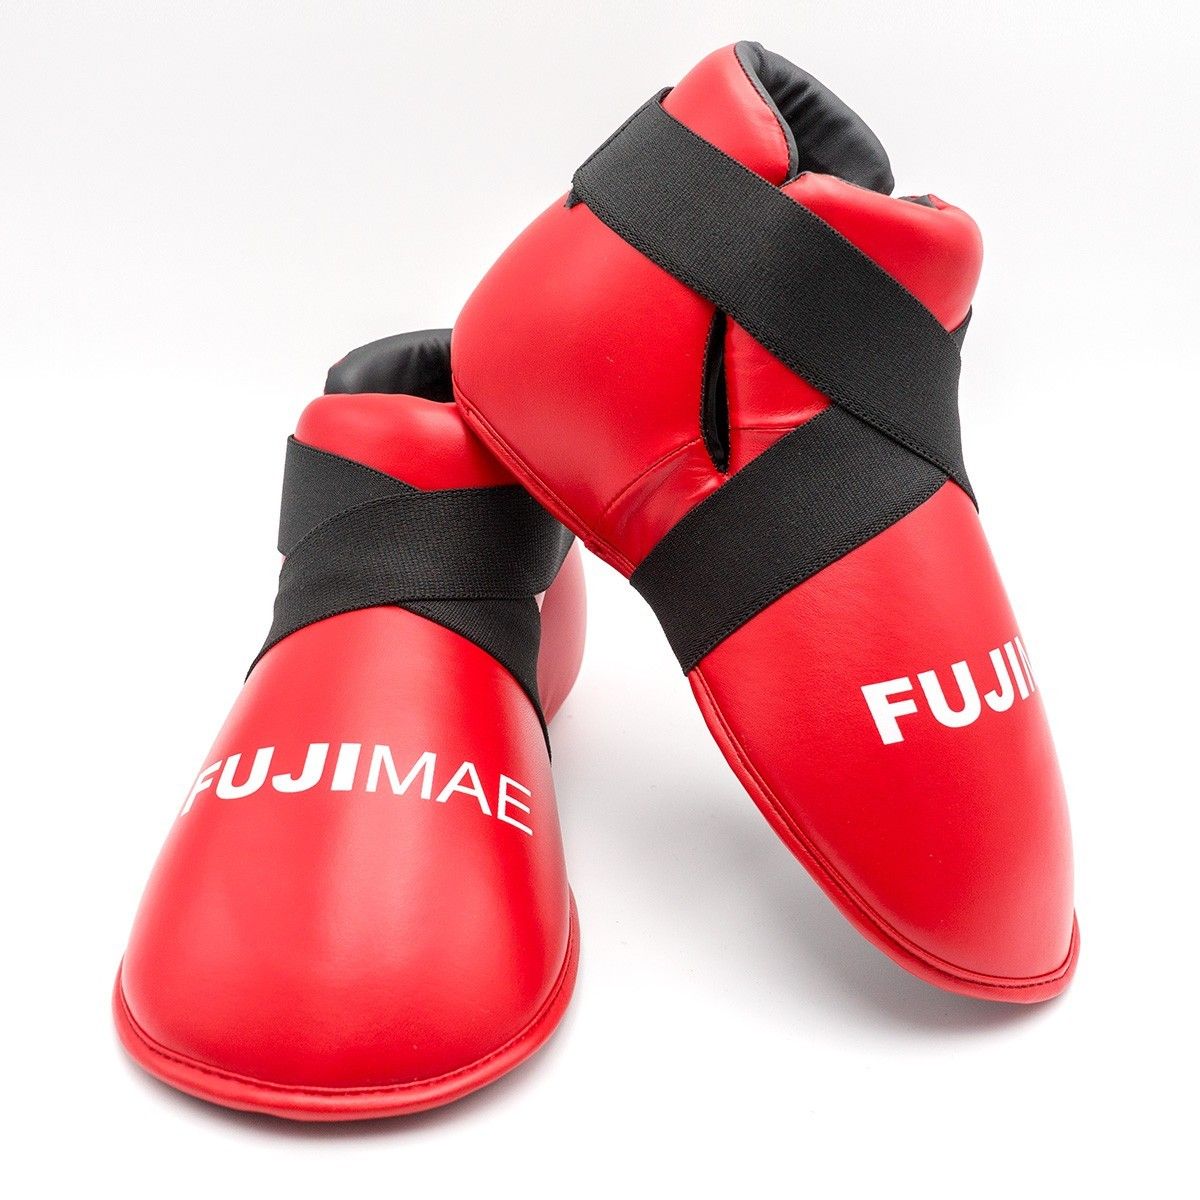 Calzari per Taekwondo ITF Approved Fujimae per allenamenti e competizioni